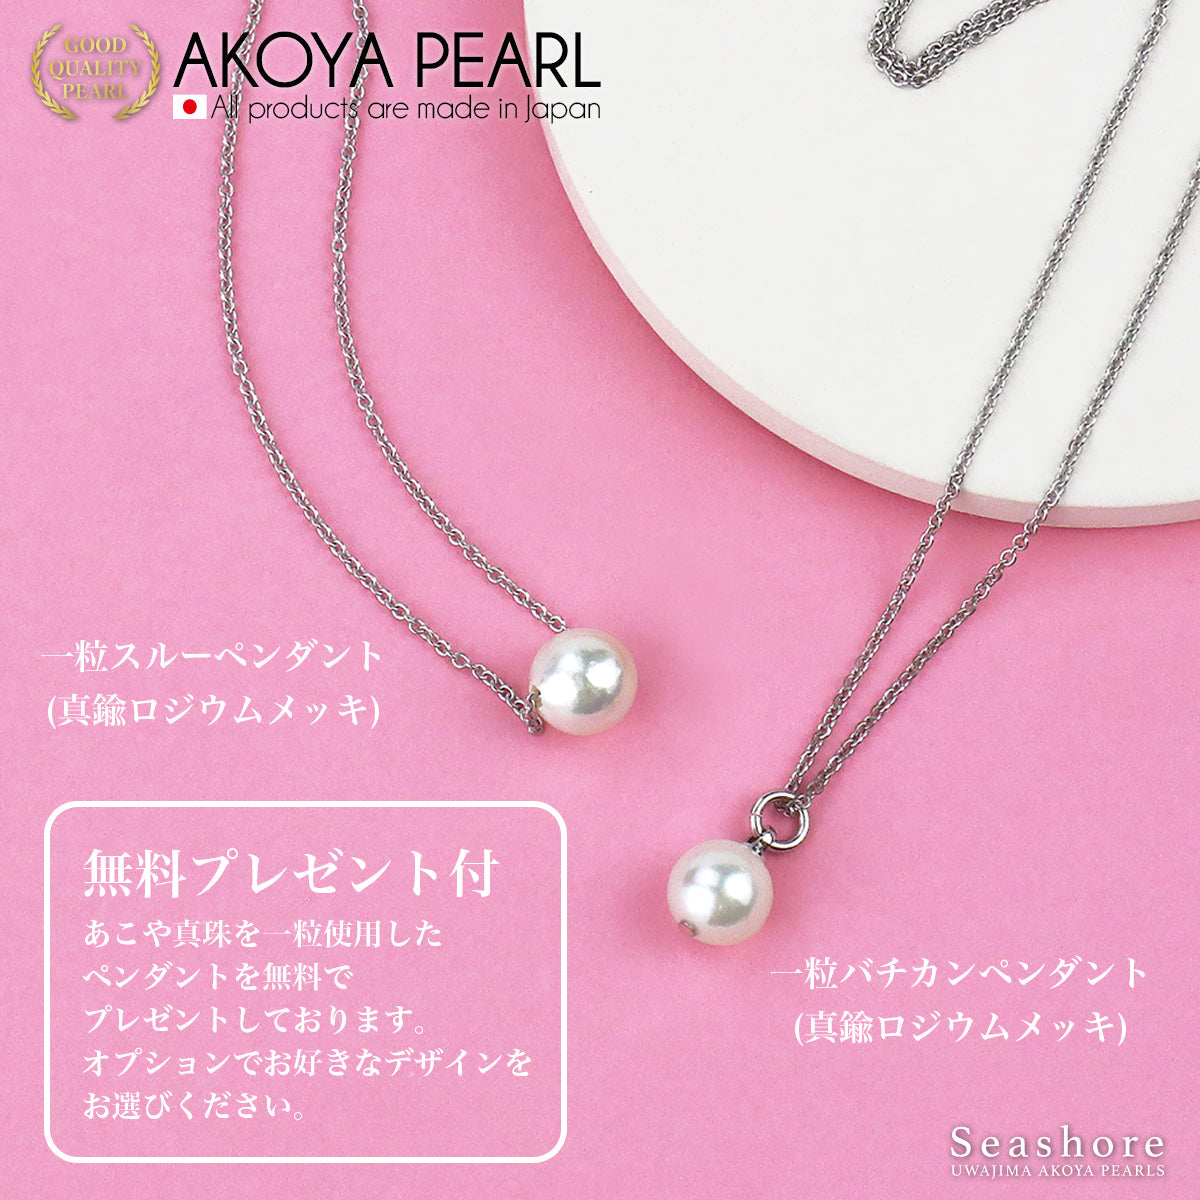 [特选花珠：格雷斯珍珠] 正装项链 2 件套 Akoya 珍珠耳环/穿孔耳环 [9.0-9.5 毫米] 白色 卷厚度 0.4 毫米或以上 真品证书 含收纳盒